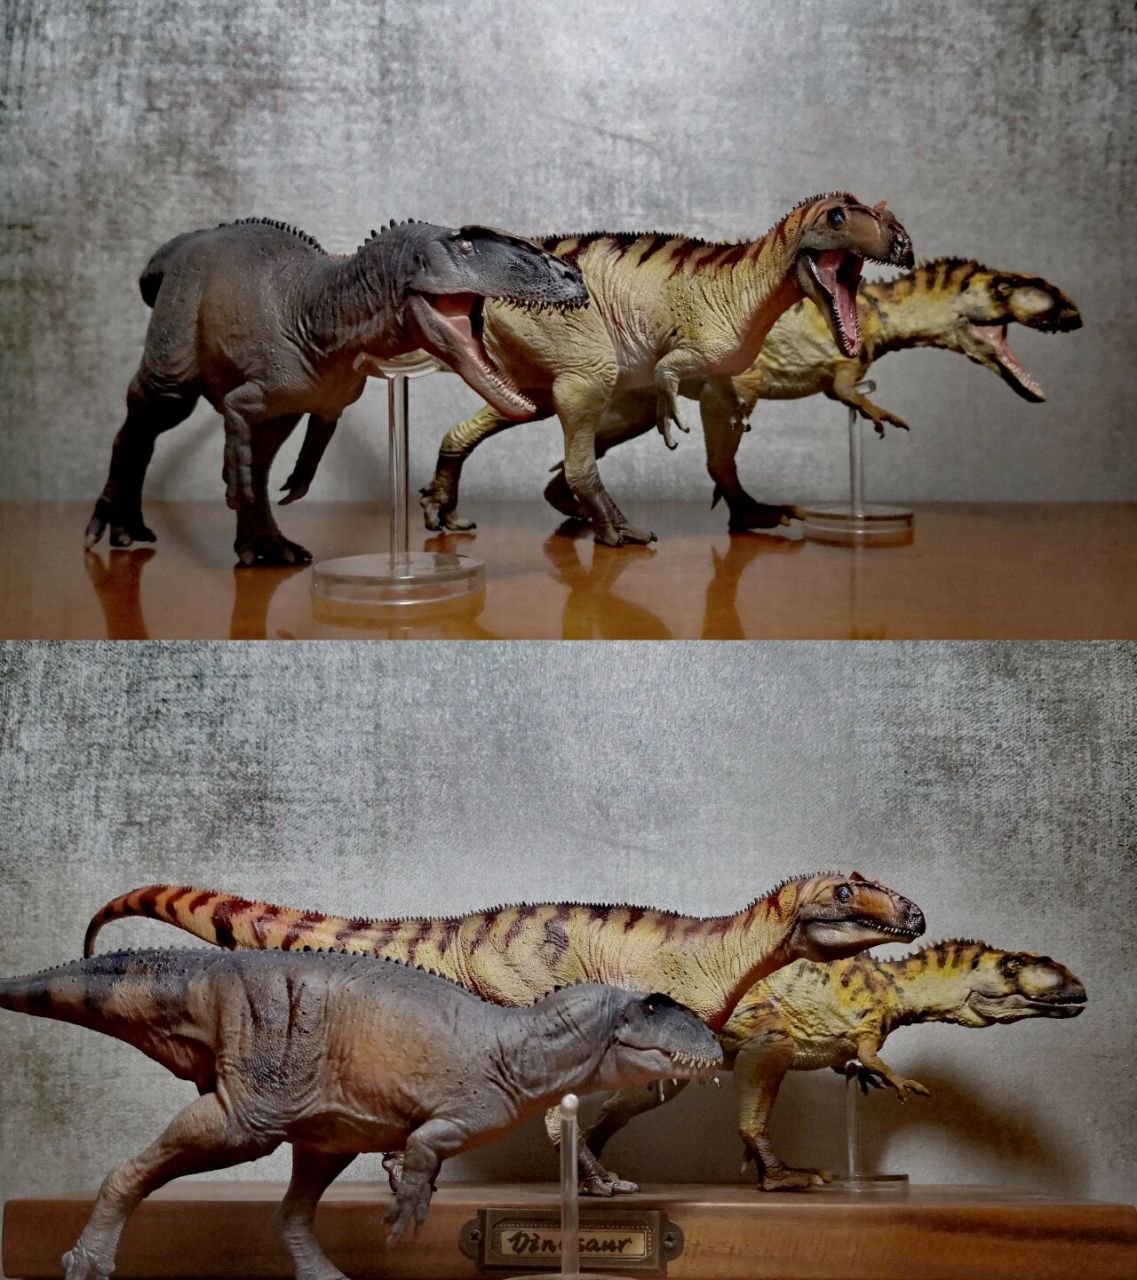 十二只兽脚类肉食恐龙 图二:中华盗龙,异特龙,永川龙,永川龙属于早期